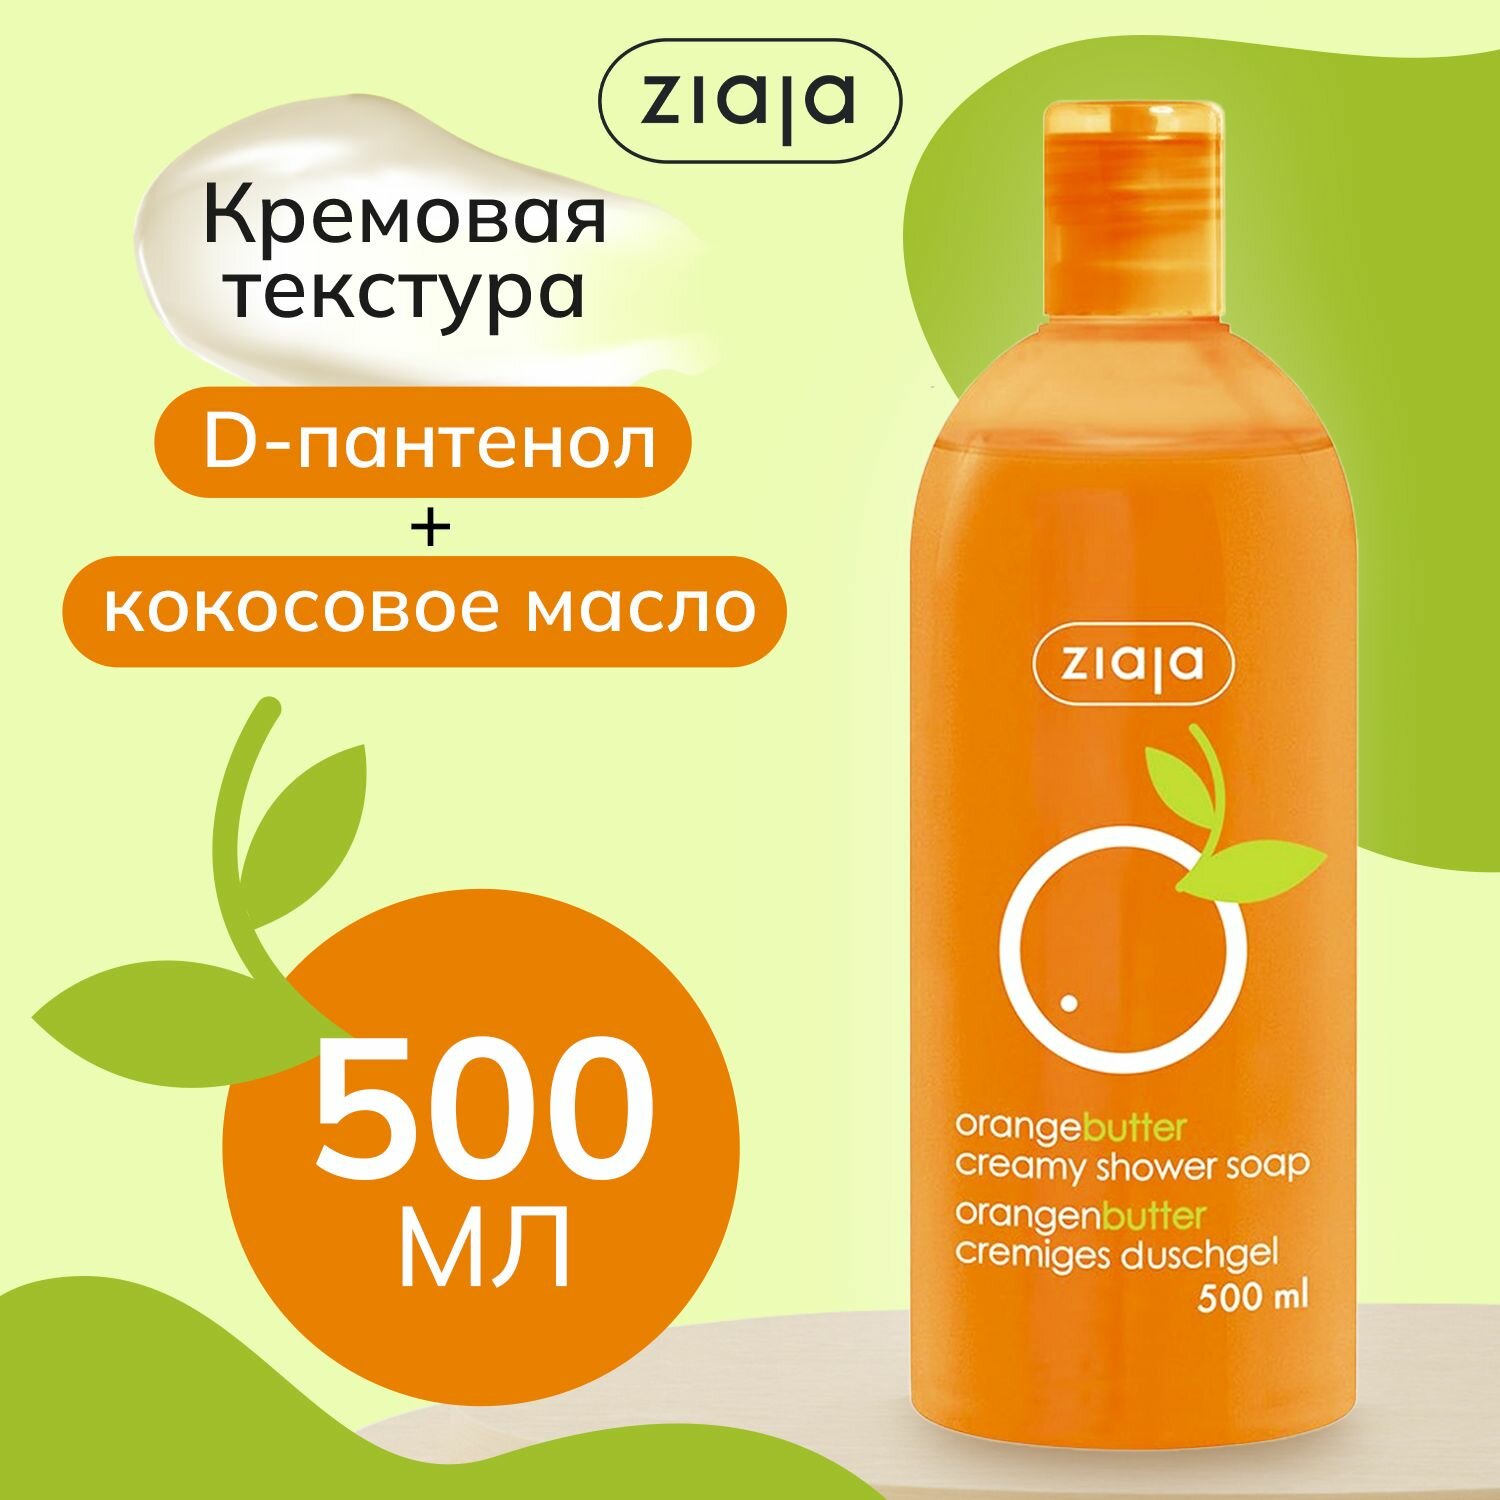 Крем-мыло "Ziaja Апельсиновое масло" 500мл